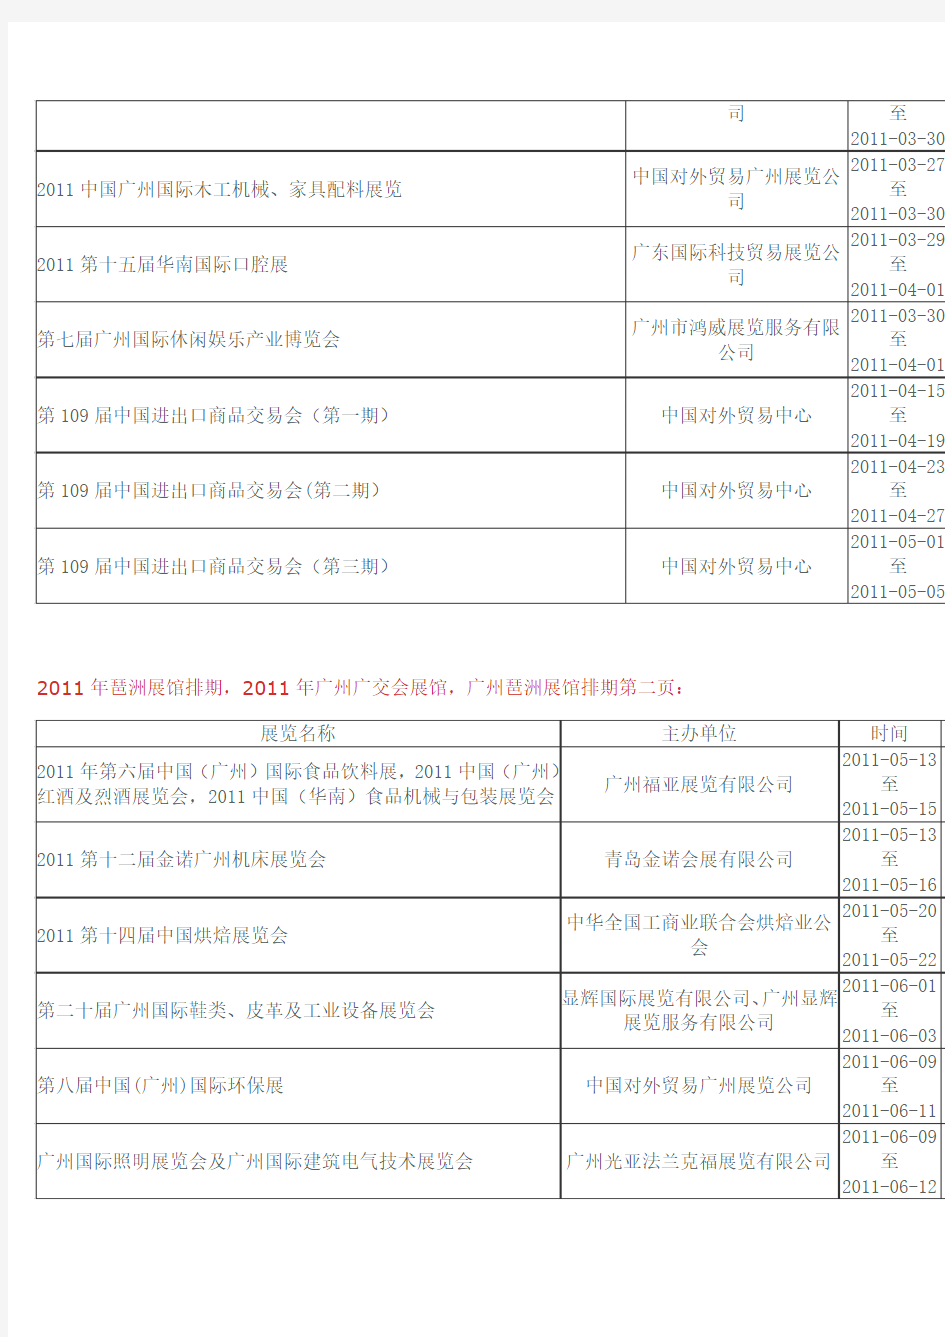 广州琶洲国际会展中心2011年会展排期